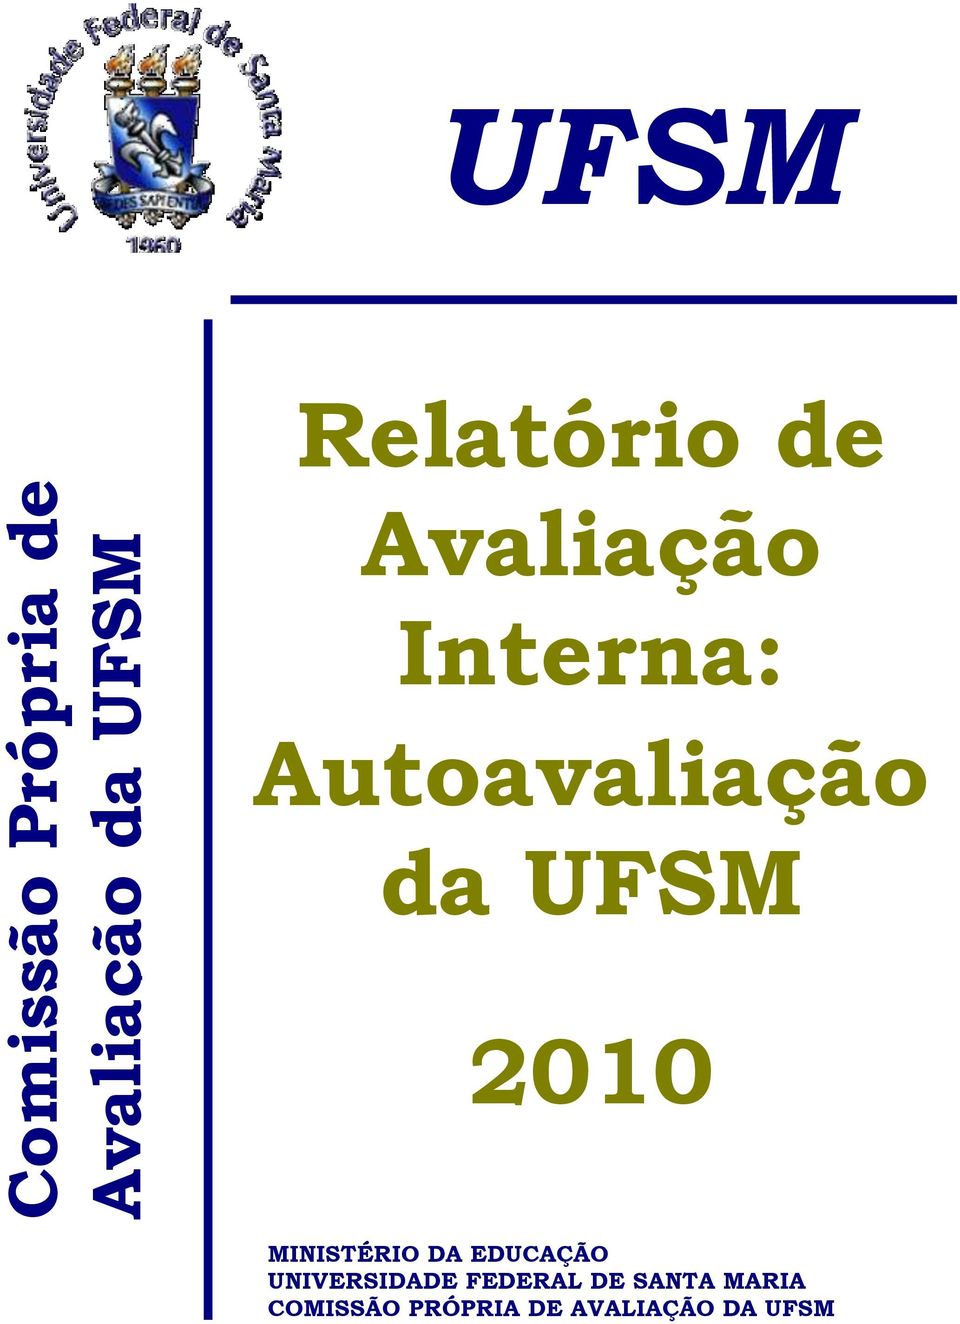 UFSM 2010 MINISTÉRIO DA EDUCAÇÃO UNIVERSIDADE